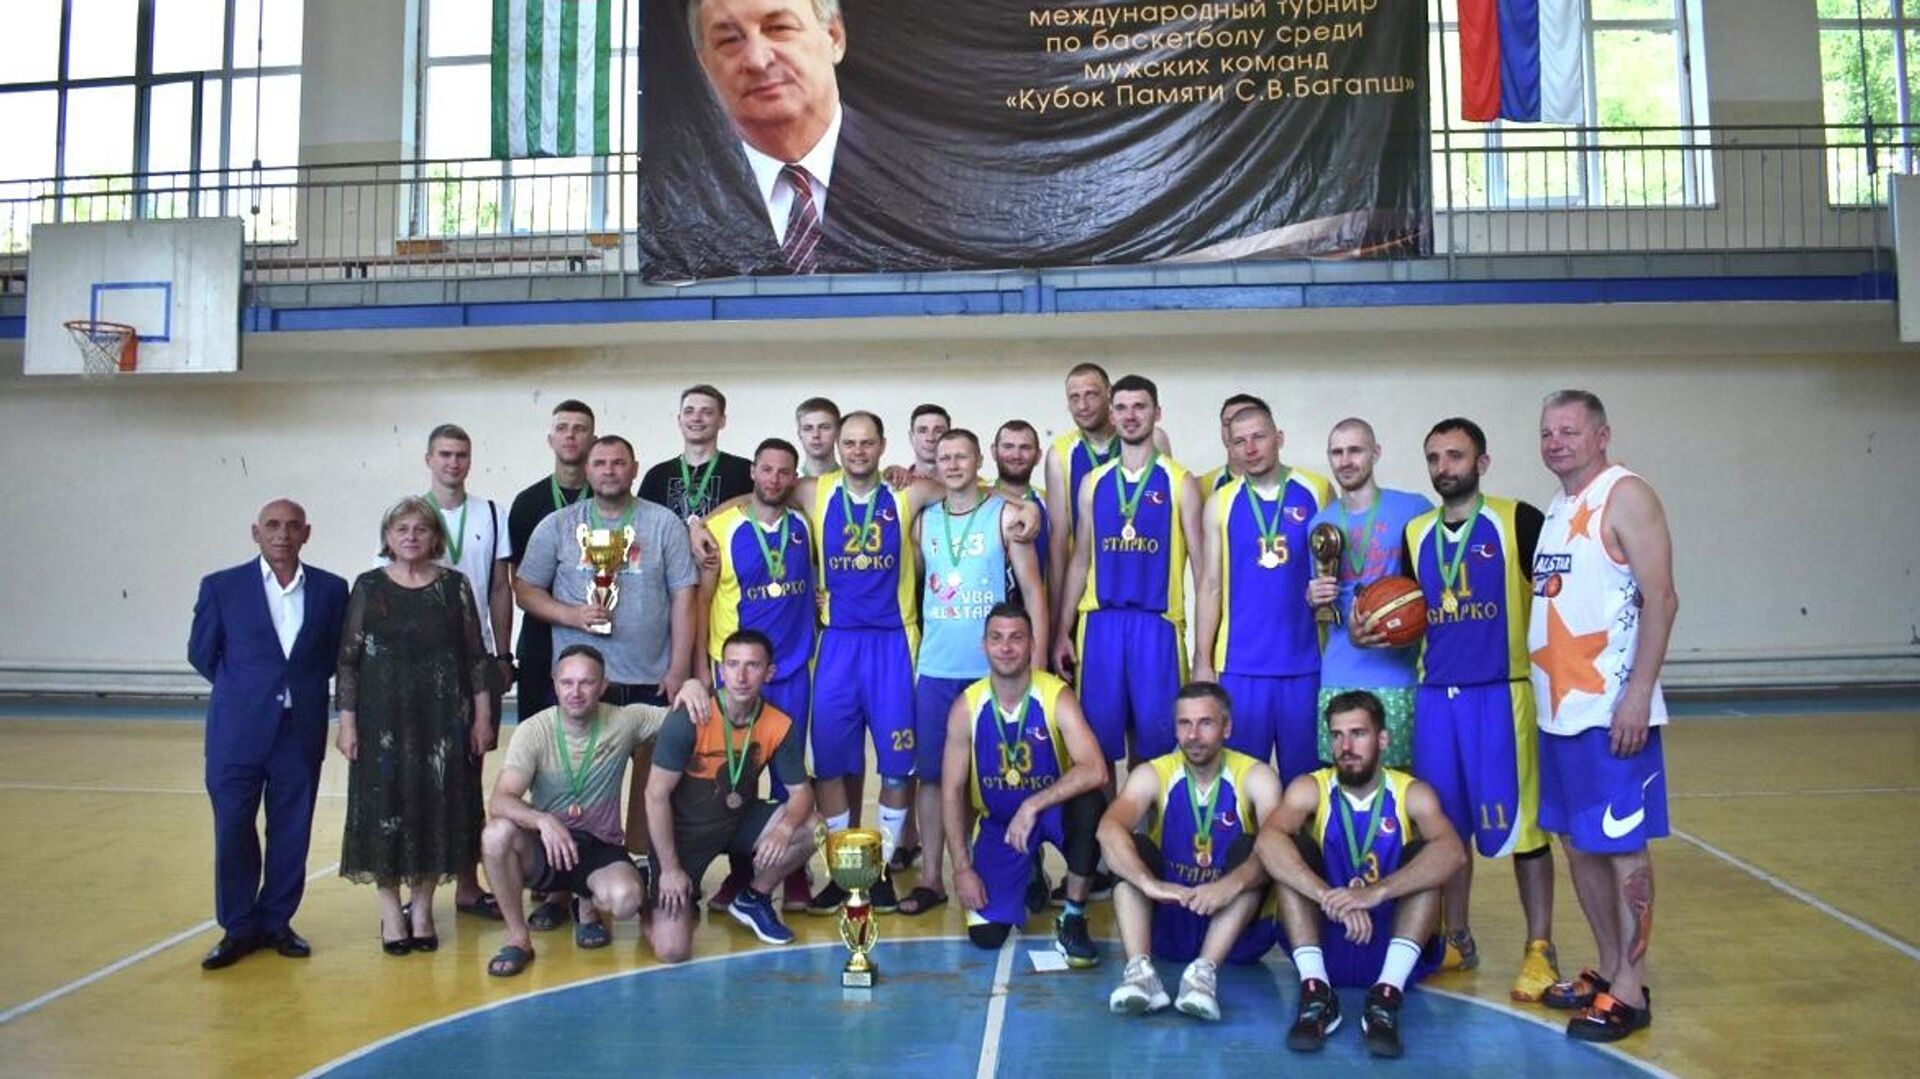 Команда из города Шахты стала победителем международного турнира по баскетболуКубок памяти Сергея Багапш - Sputnik Аҧсны, 1920, 07.07.2022